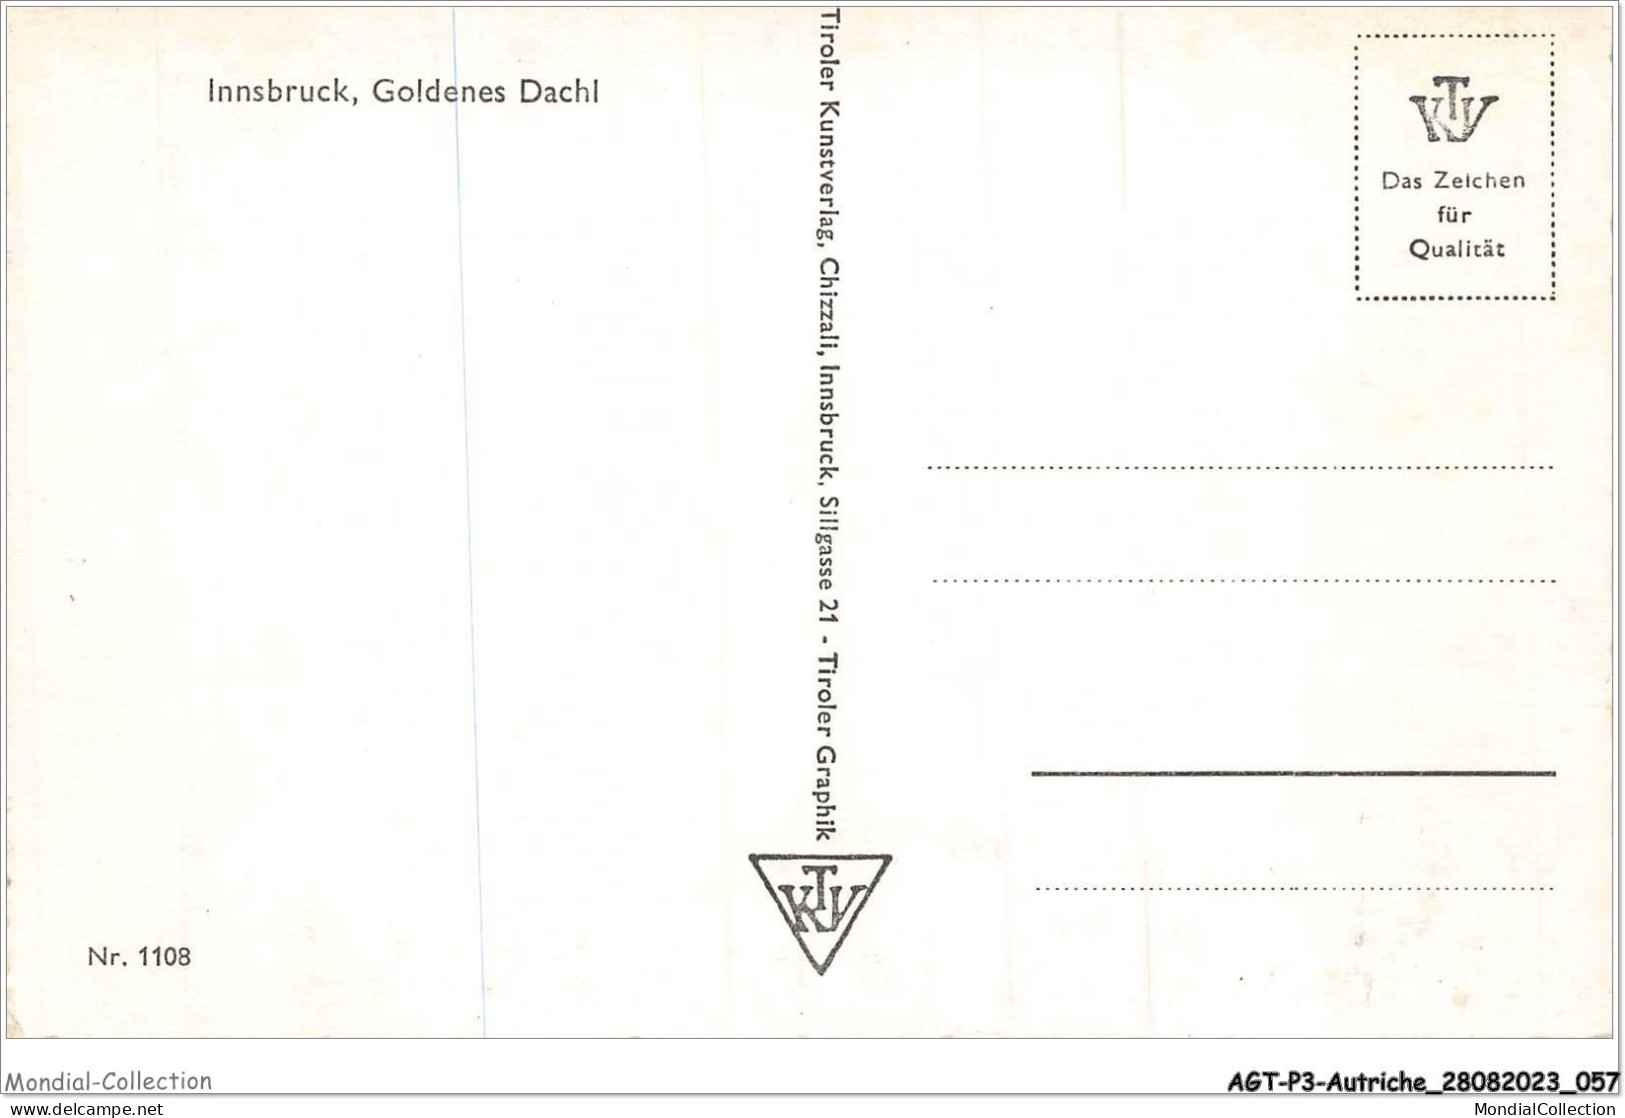 AGTP3-0174-AUTRICHE - INNSBRUCK - Goldenes Dachl - Innsbruck